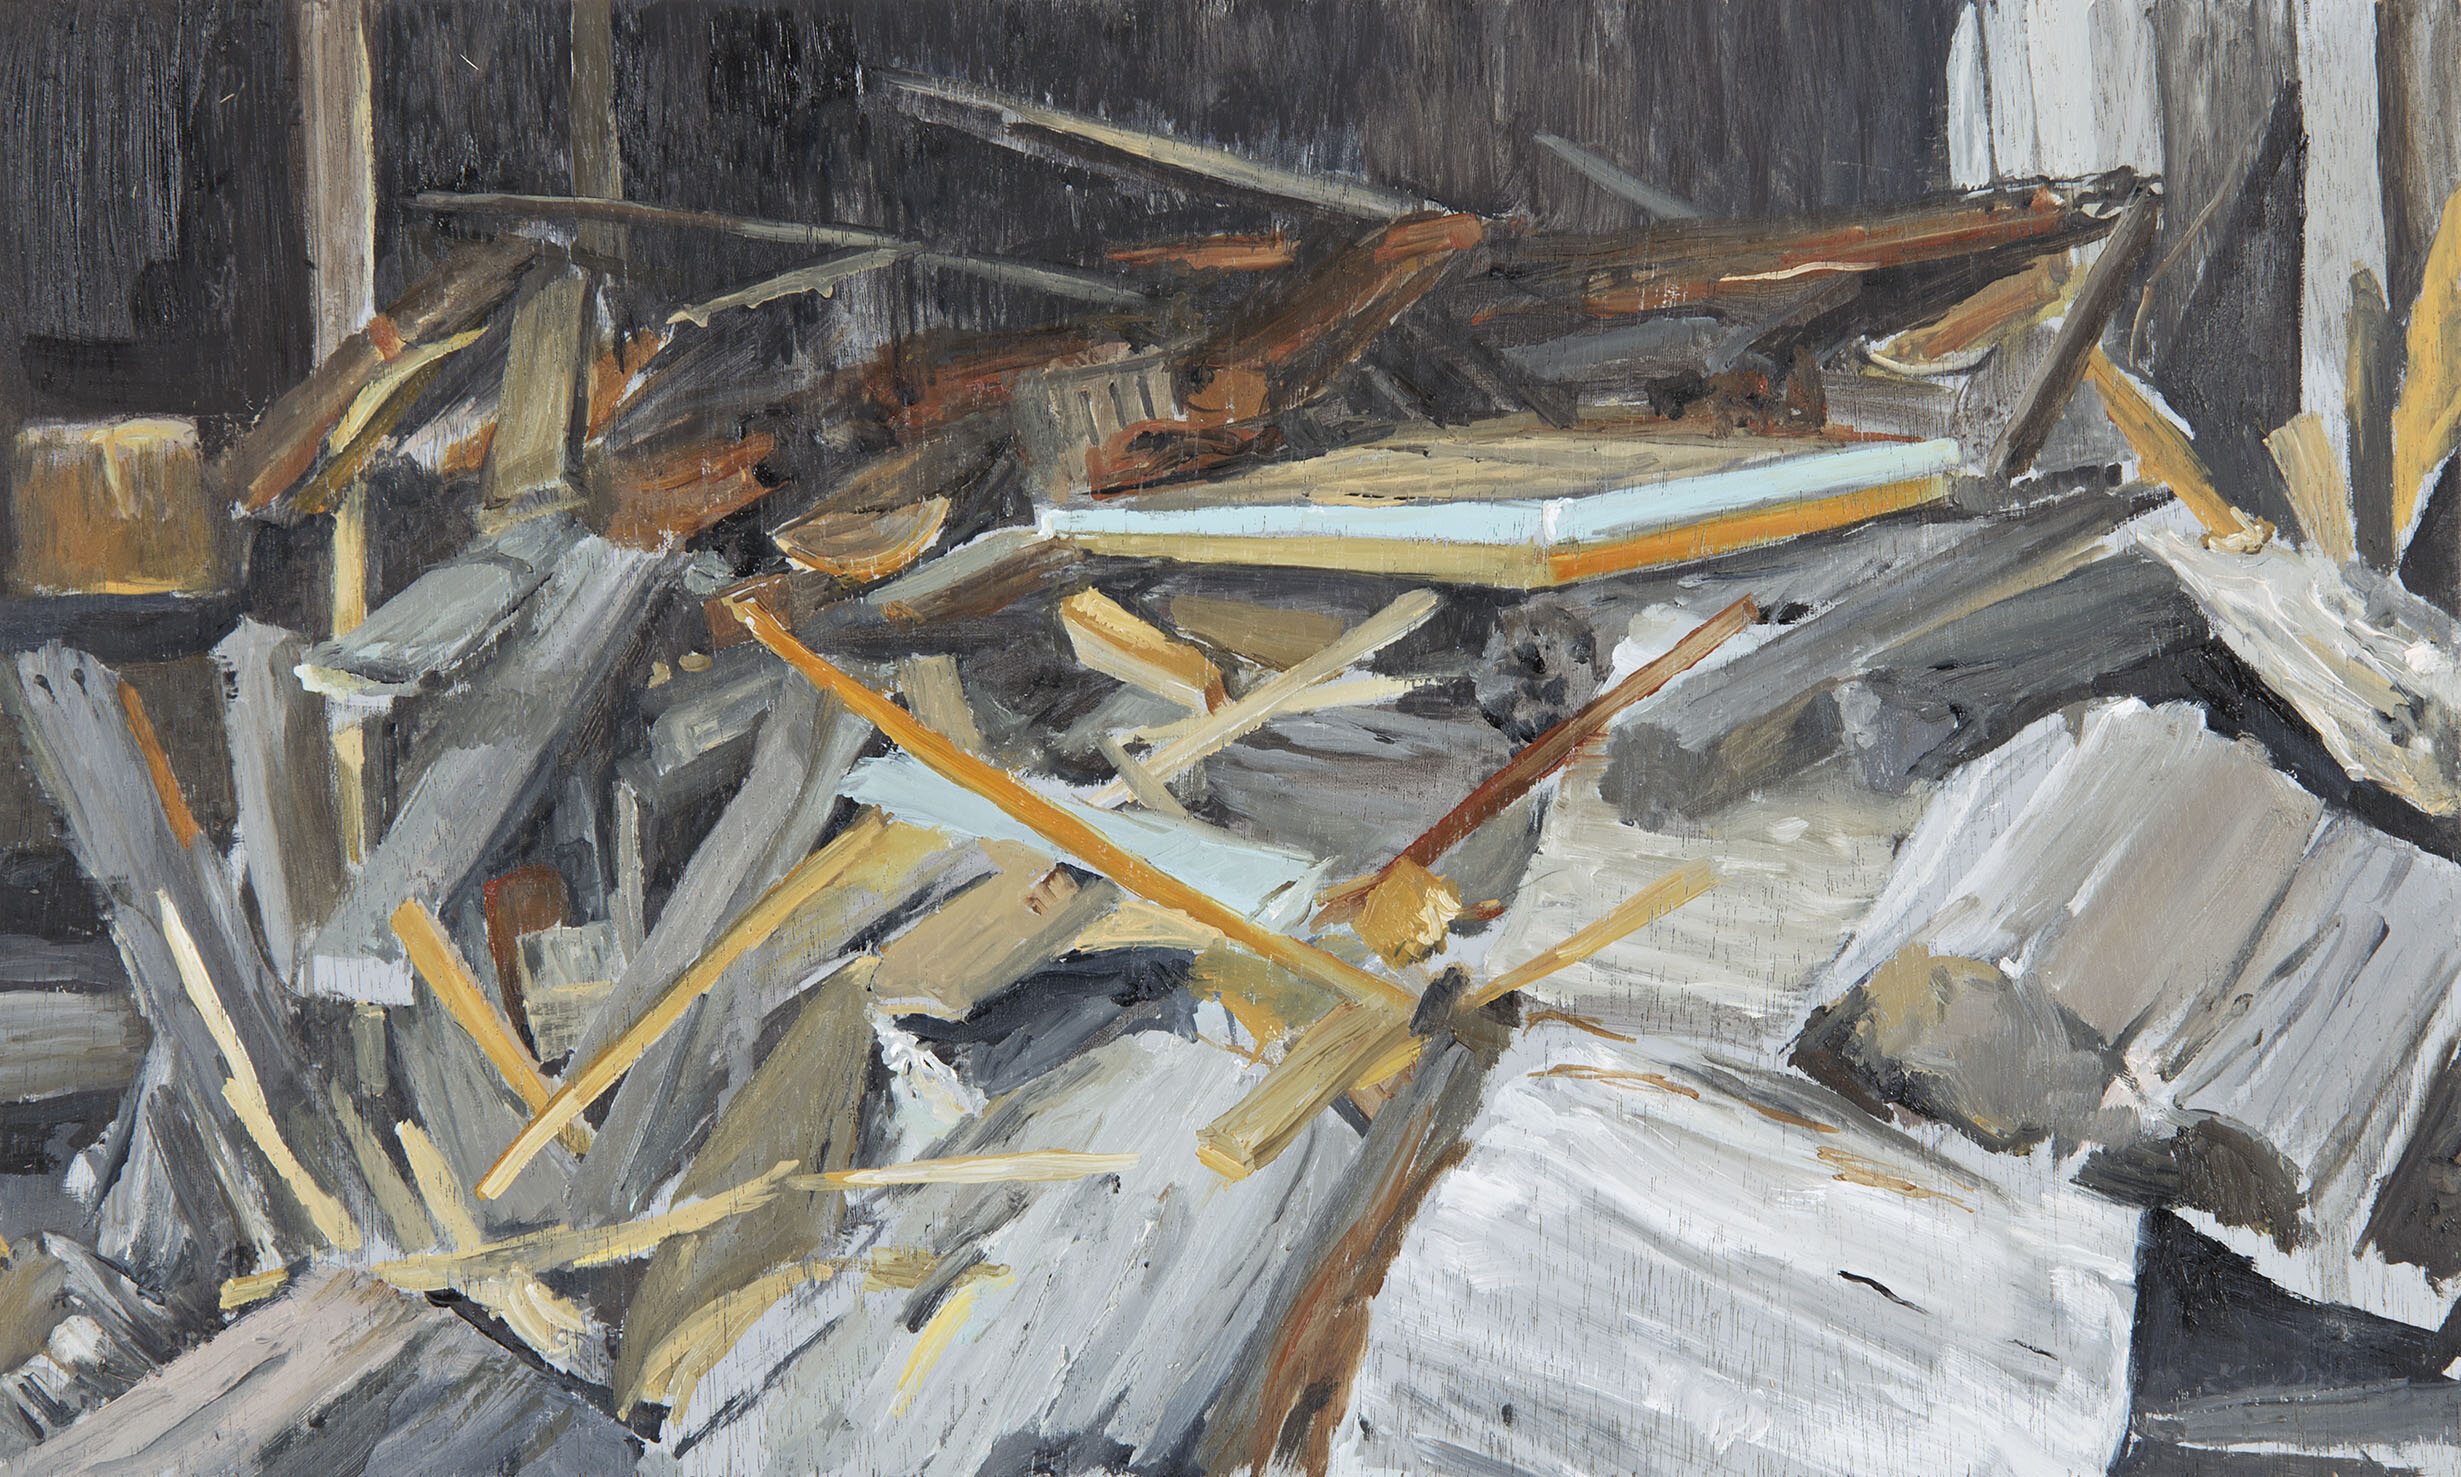 Wood Pile, 2016, Oil on Plywood, 28 x 40 cm